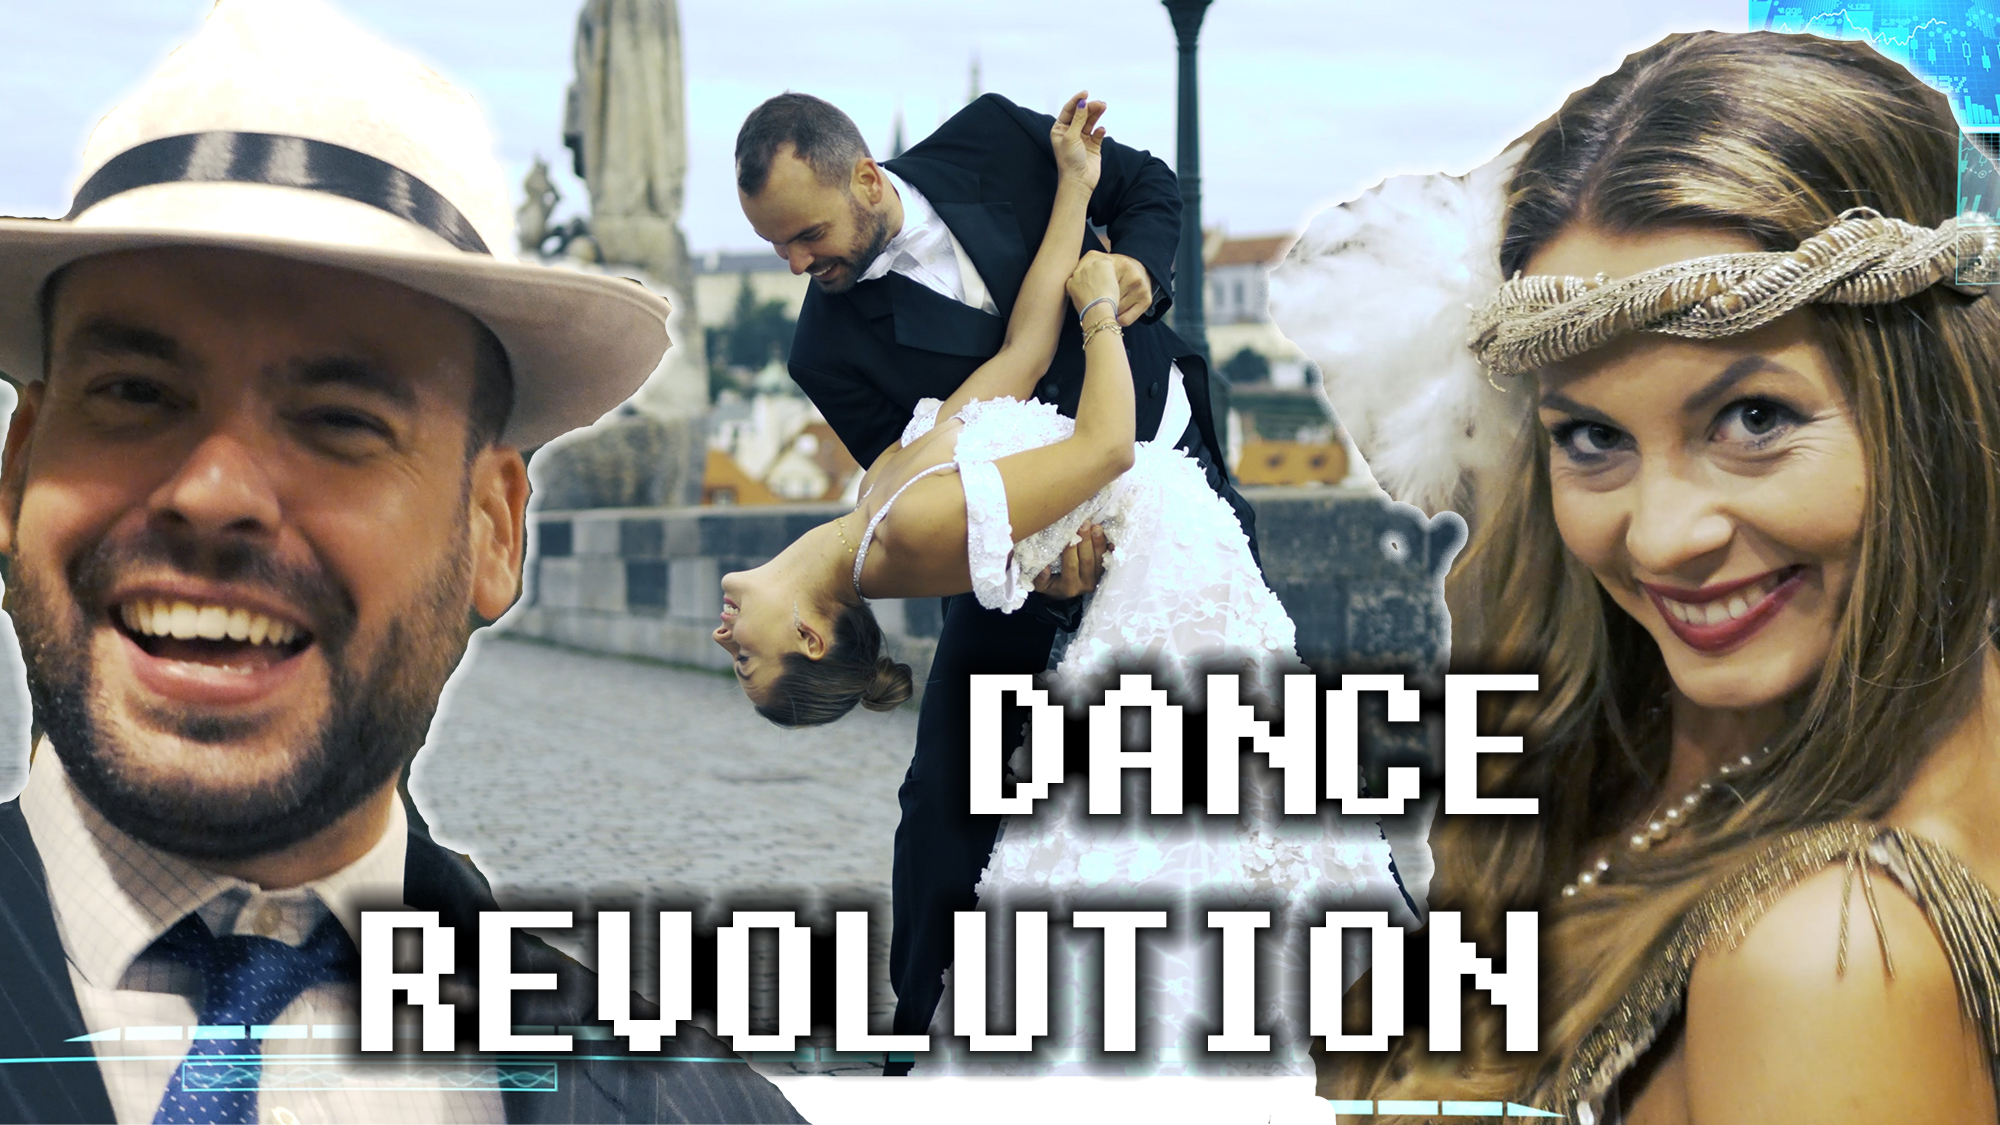 Taneční video s finalistkou Stardance je venku! Dance revolution sází na historii tance 